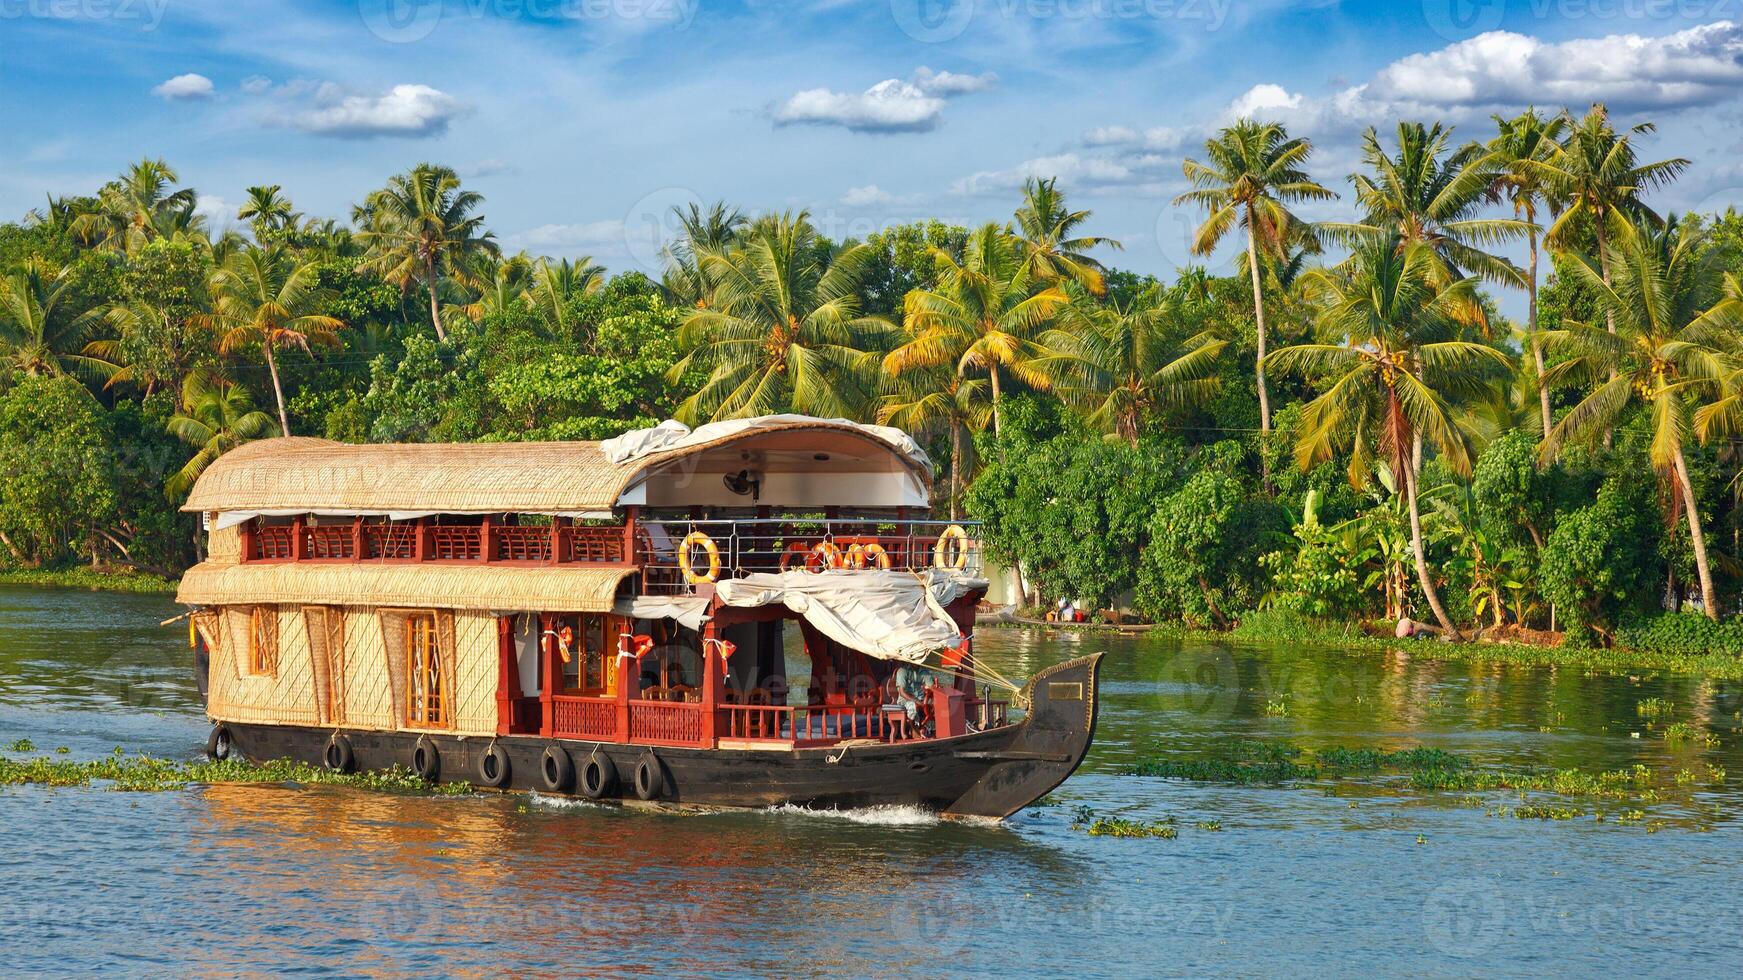 péniche sur Kerala les backwaters, Inde photo